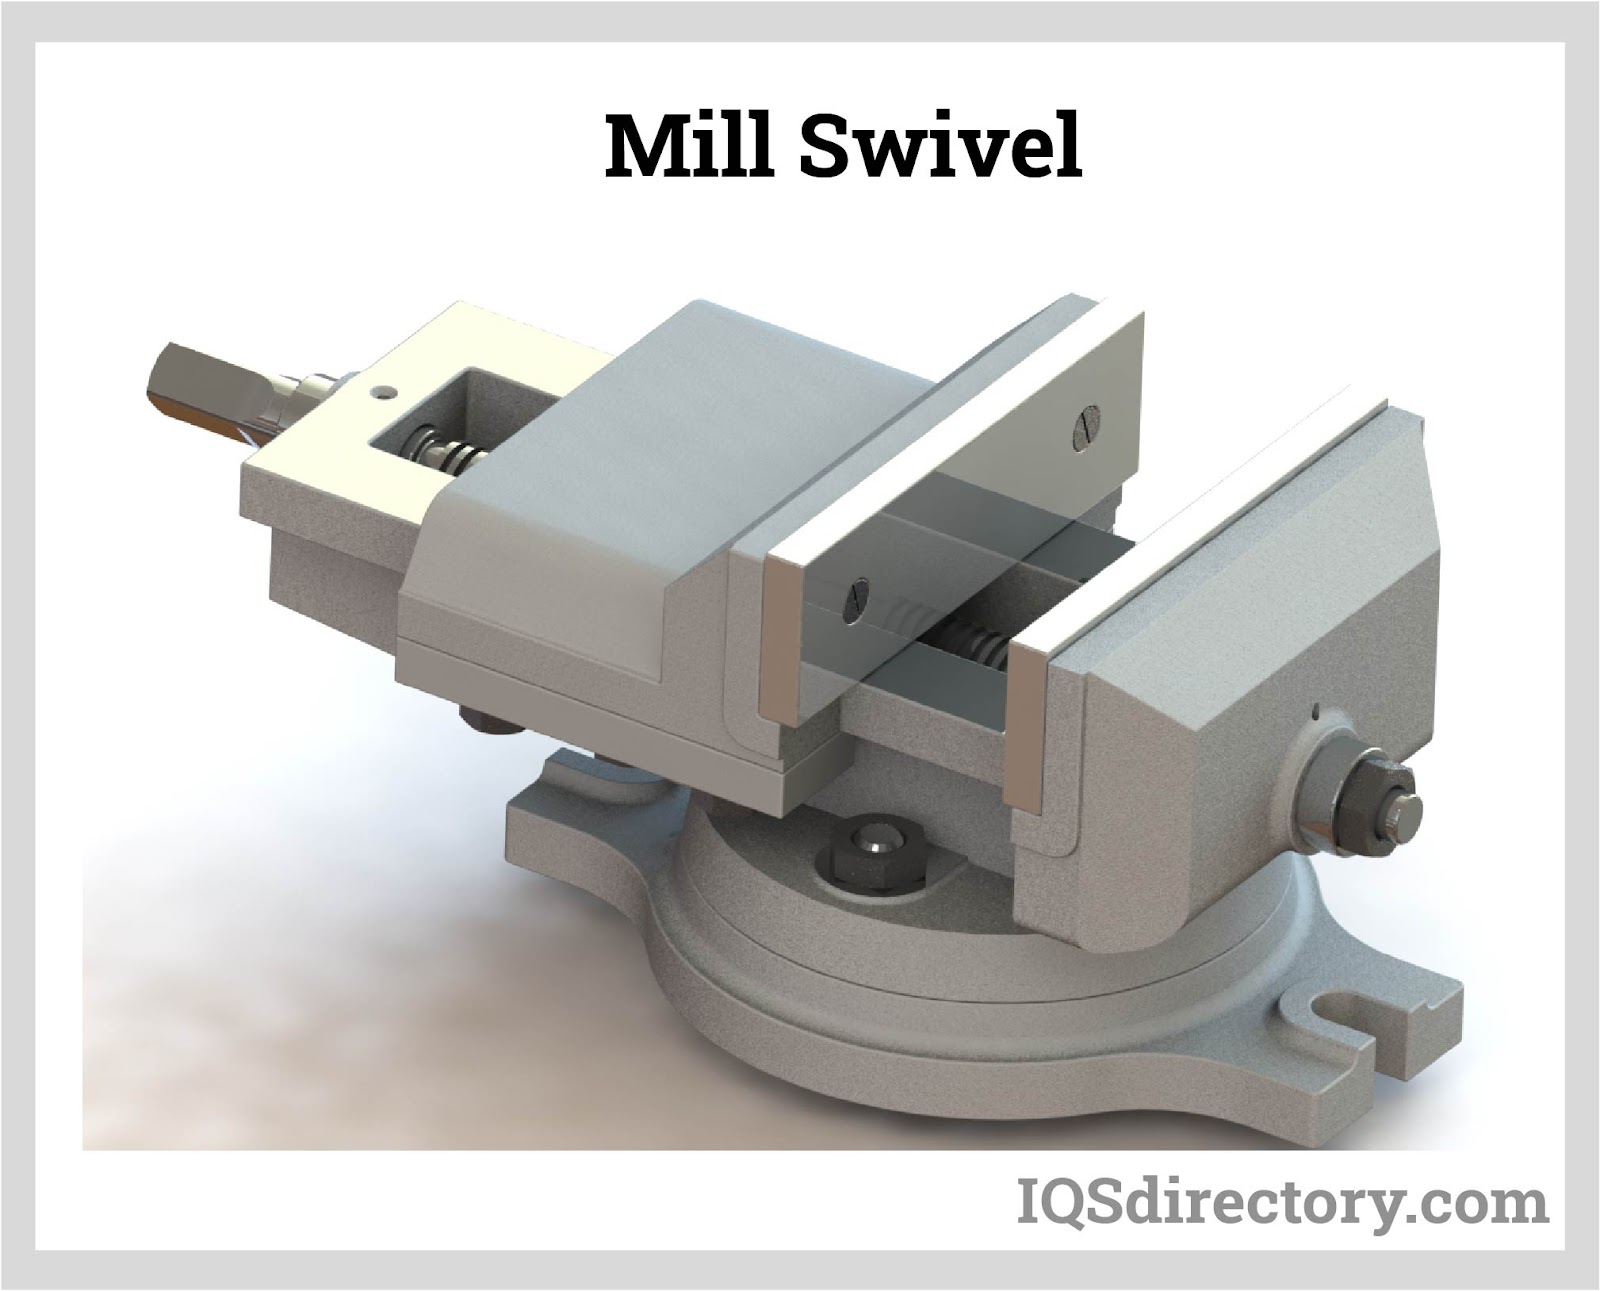 Mill Swivel